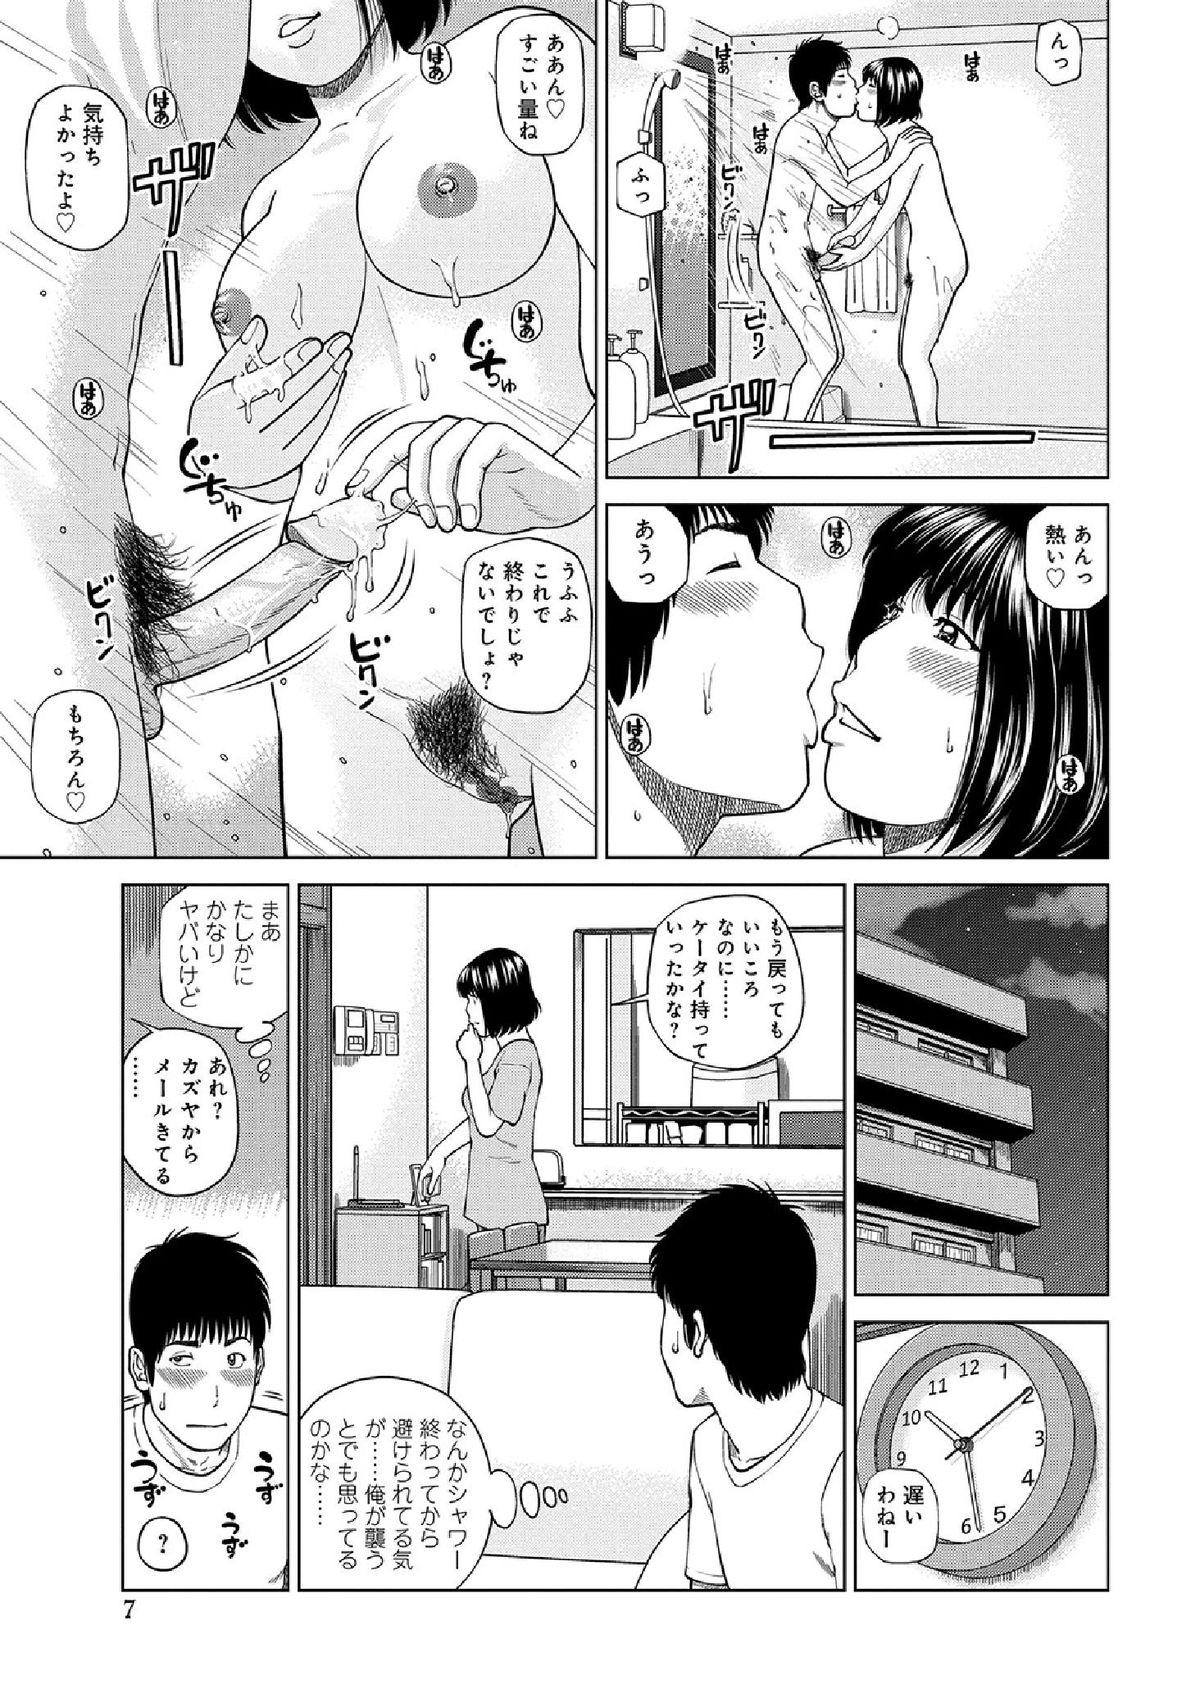 Babes WEB Han Comic Geki Yaba! Vol.52 Internal - Page 9